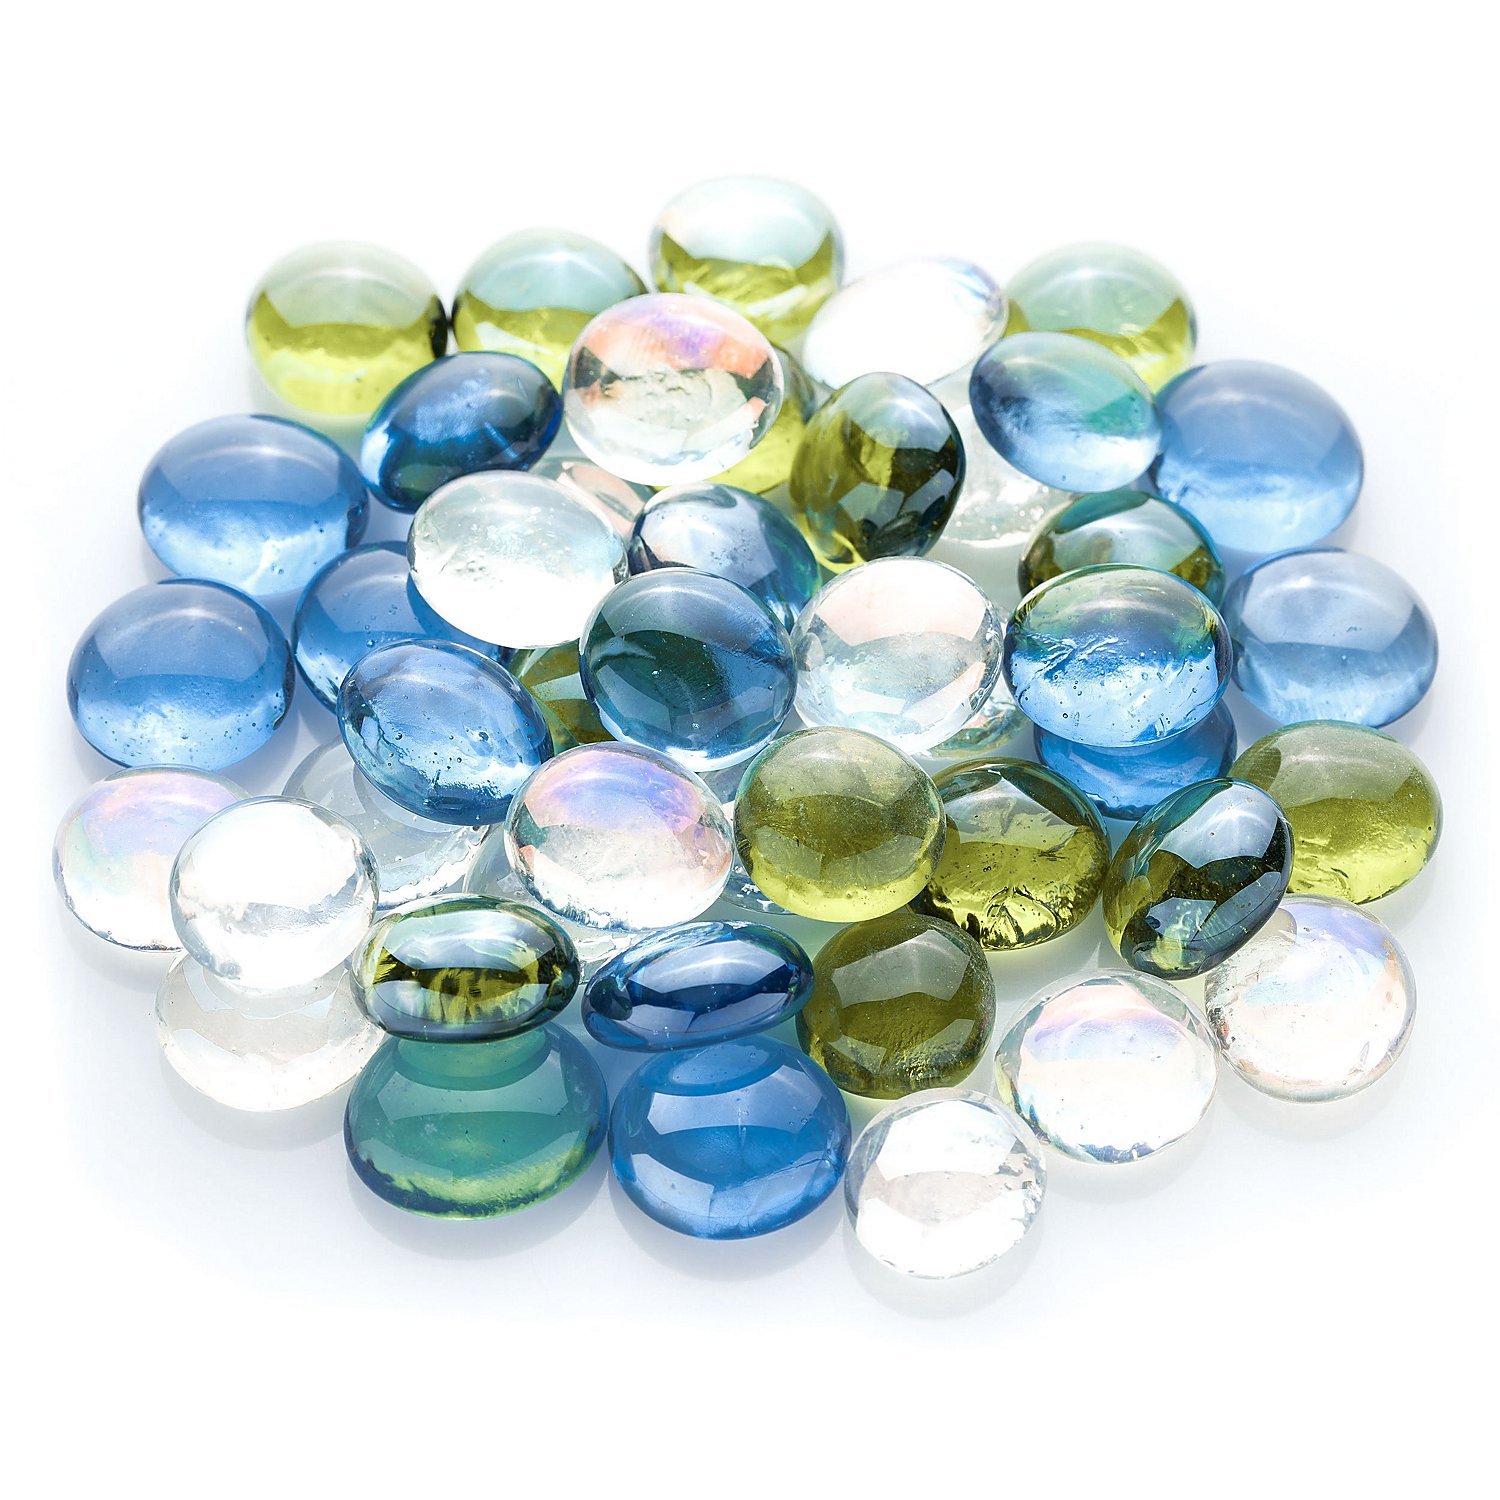 21 Farben 1kg Glassteine 4-10mm Glasnuggets Nuggets Steine DekosteineTischdeko 